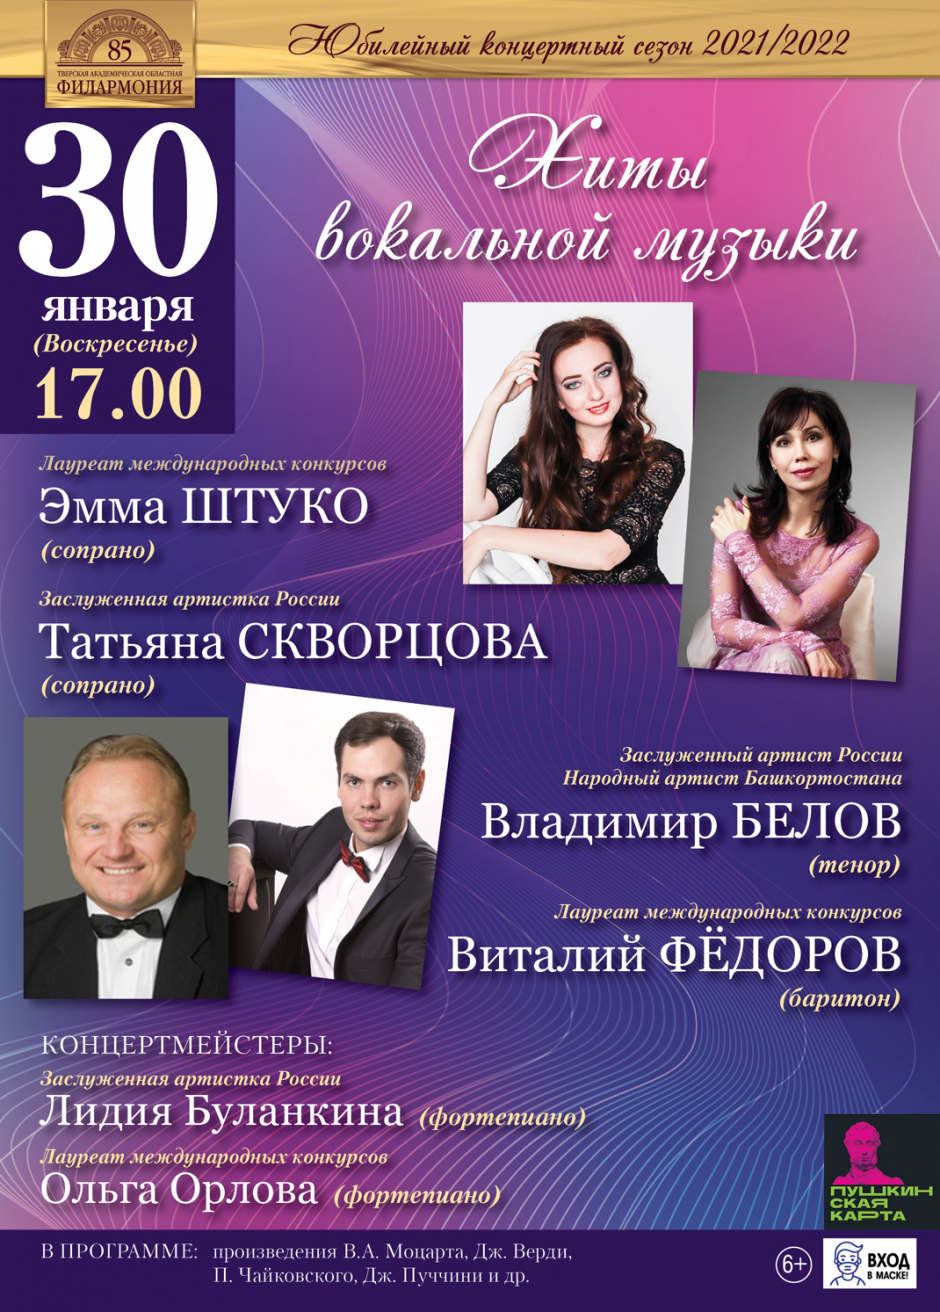 Тверская академическая филармония приглашает на концерт «Хиты вокальной музыки»